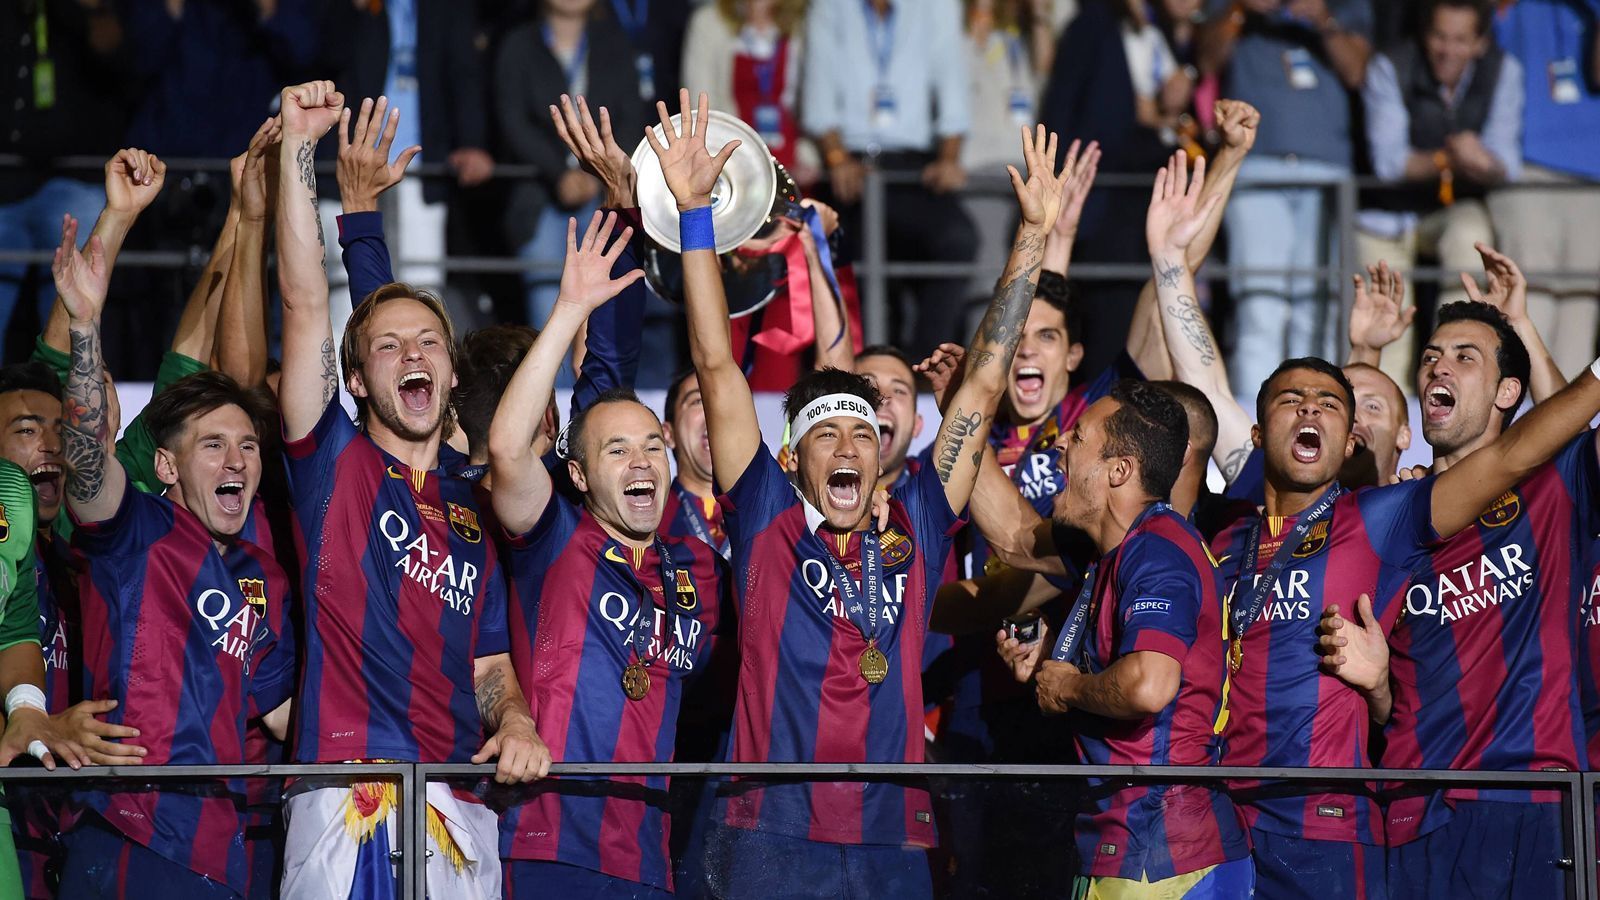 
                <strong>FC Barcelona (2015)</strong><br>
                Der FC Barcelona war 2015 der erste Verein, der bereits zum zweiten Mal das Triple gewann. Unter Trainer Luis Enrique blieben die Katalanen erfolgreich, gewannen im Jahr darauf das Double aus Meisterschaft und Pokal. In der Champions League scheiterten sie allerdings im Viertelfinale an Atletico Madrid.
              